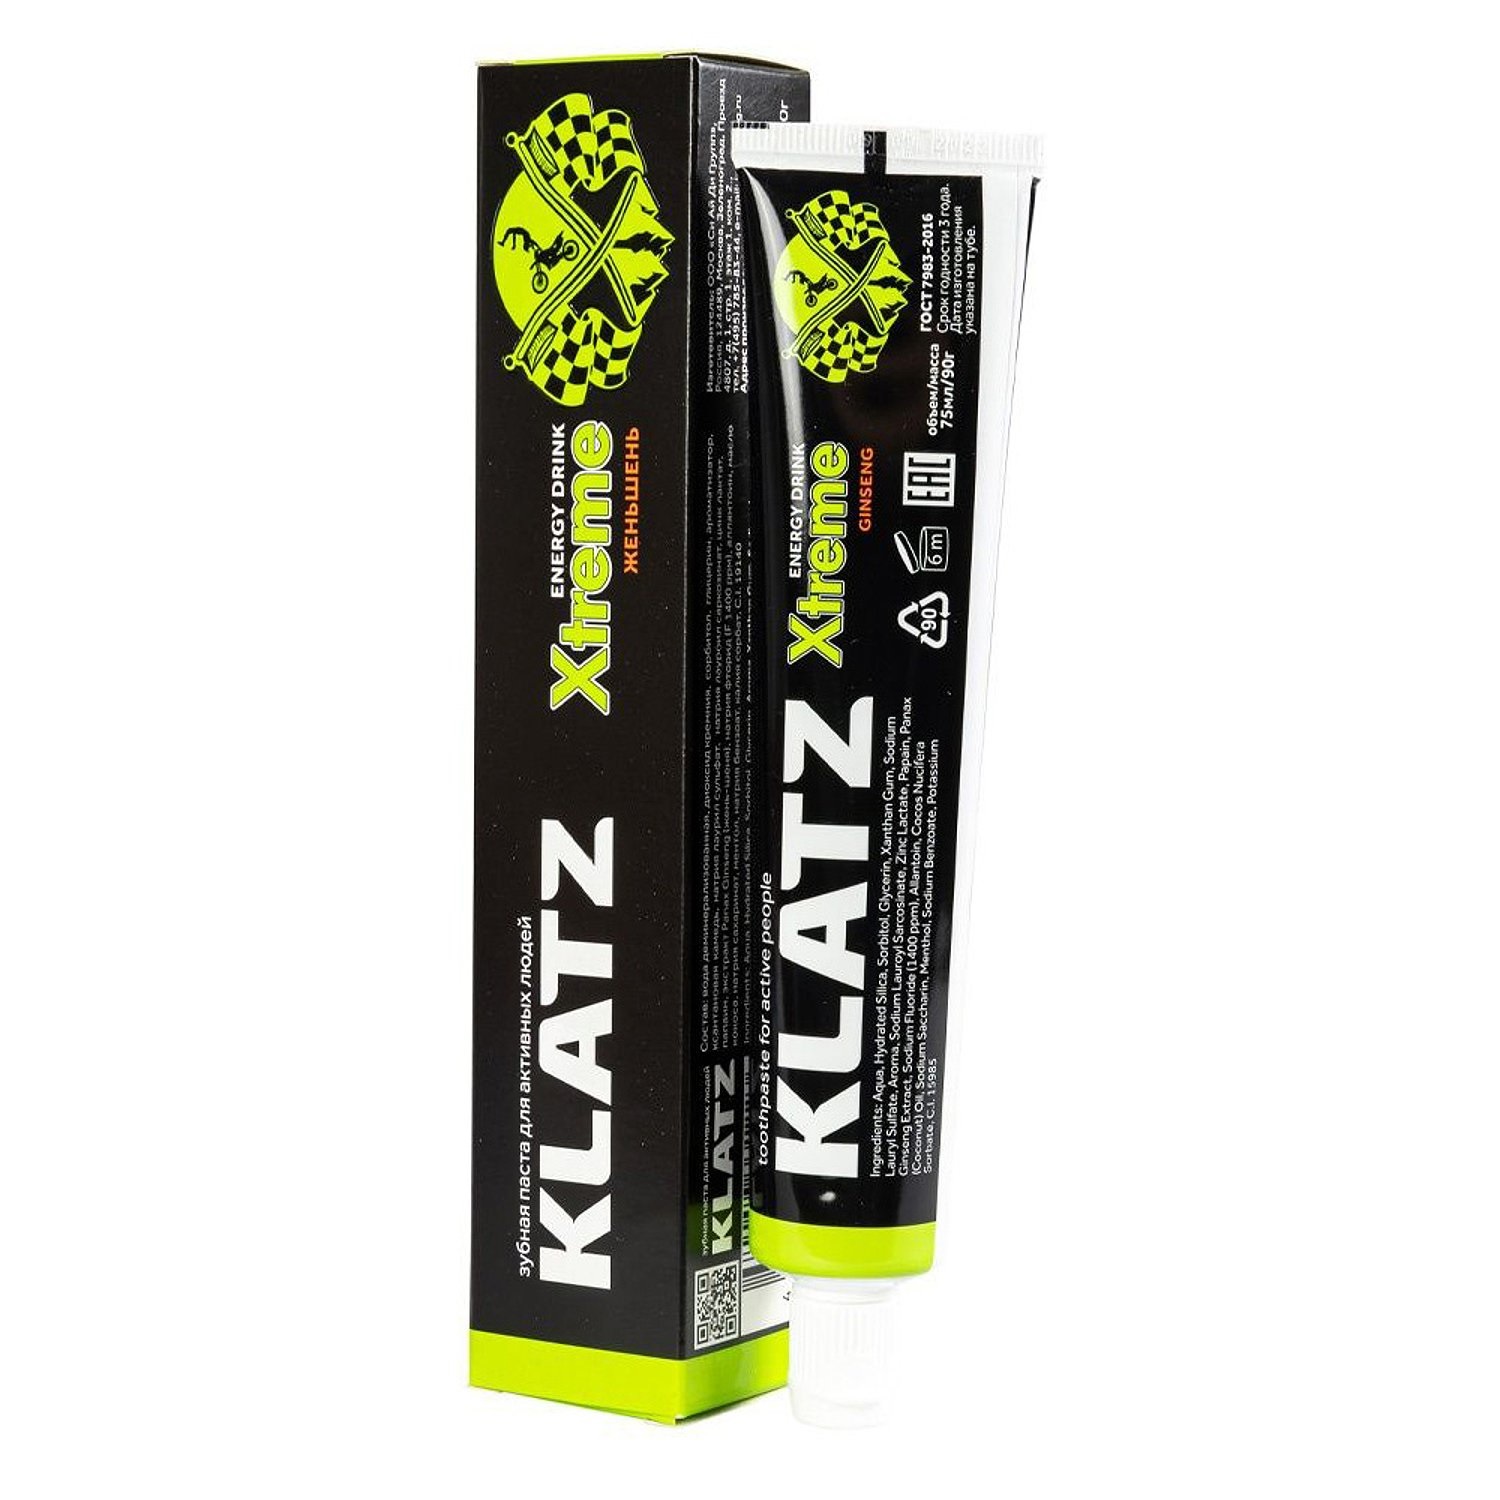 Зубная паста KLATZ X-treme Energy Drink для активных людей, женьшень, 75 мл